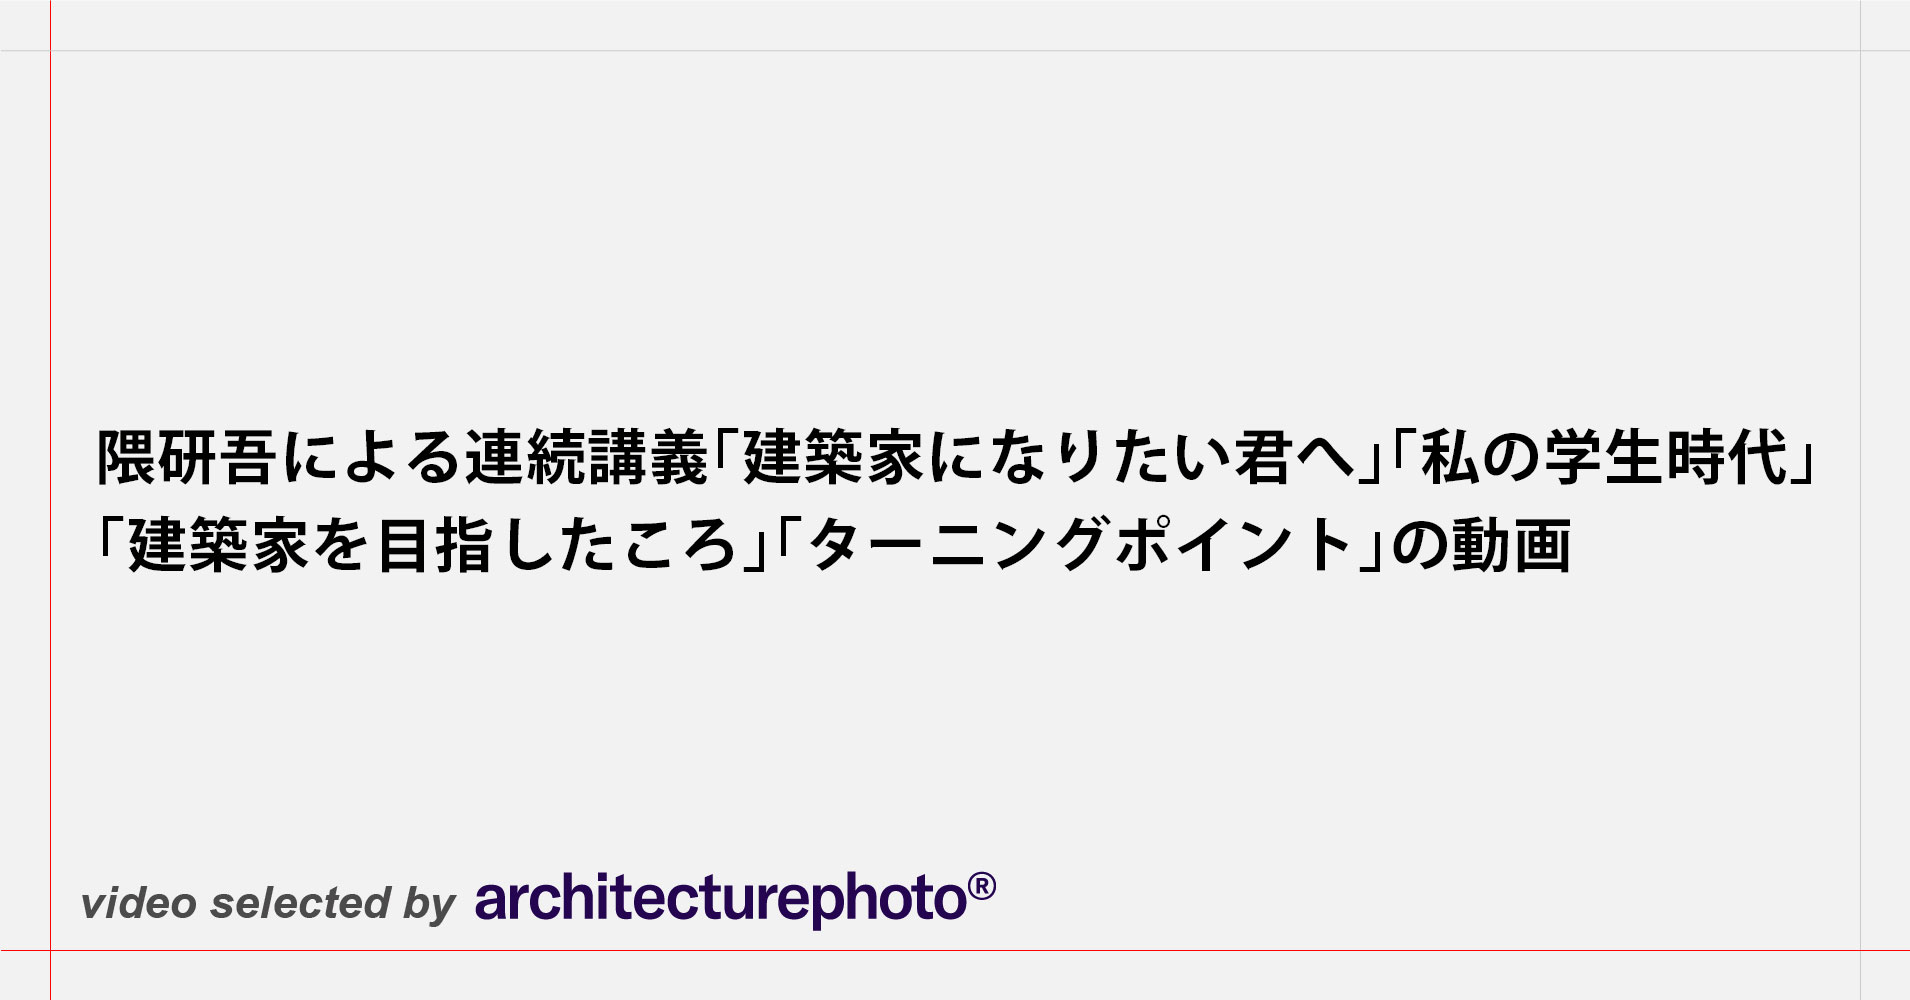 隈研吾による連続講義「建築家になりたい君へ」「私の学生時代」「建築家を目指したころ」「ターニングポイント」の動画 |  architecturephoto.net